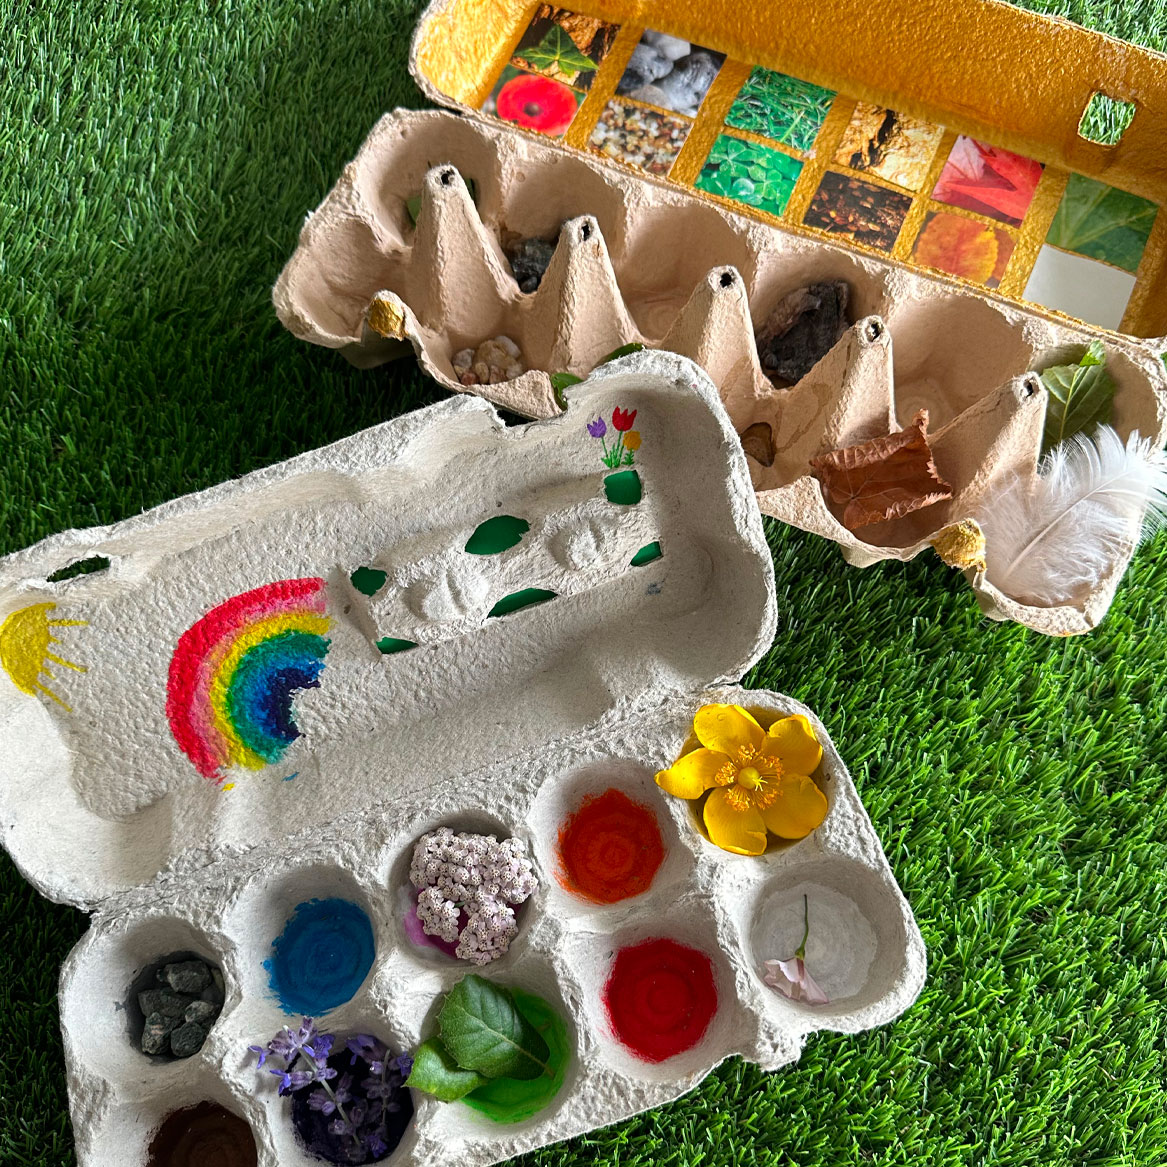 Atelier créatif pour les enfants - RECYCLAGE : jouets, déco, accessoires…